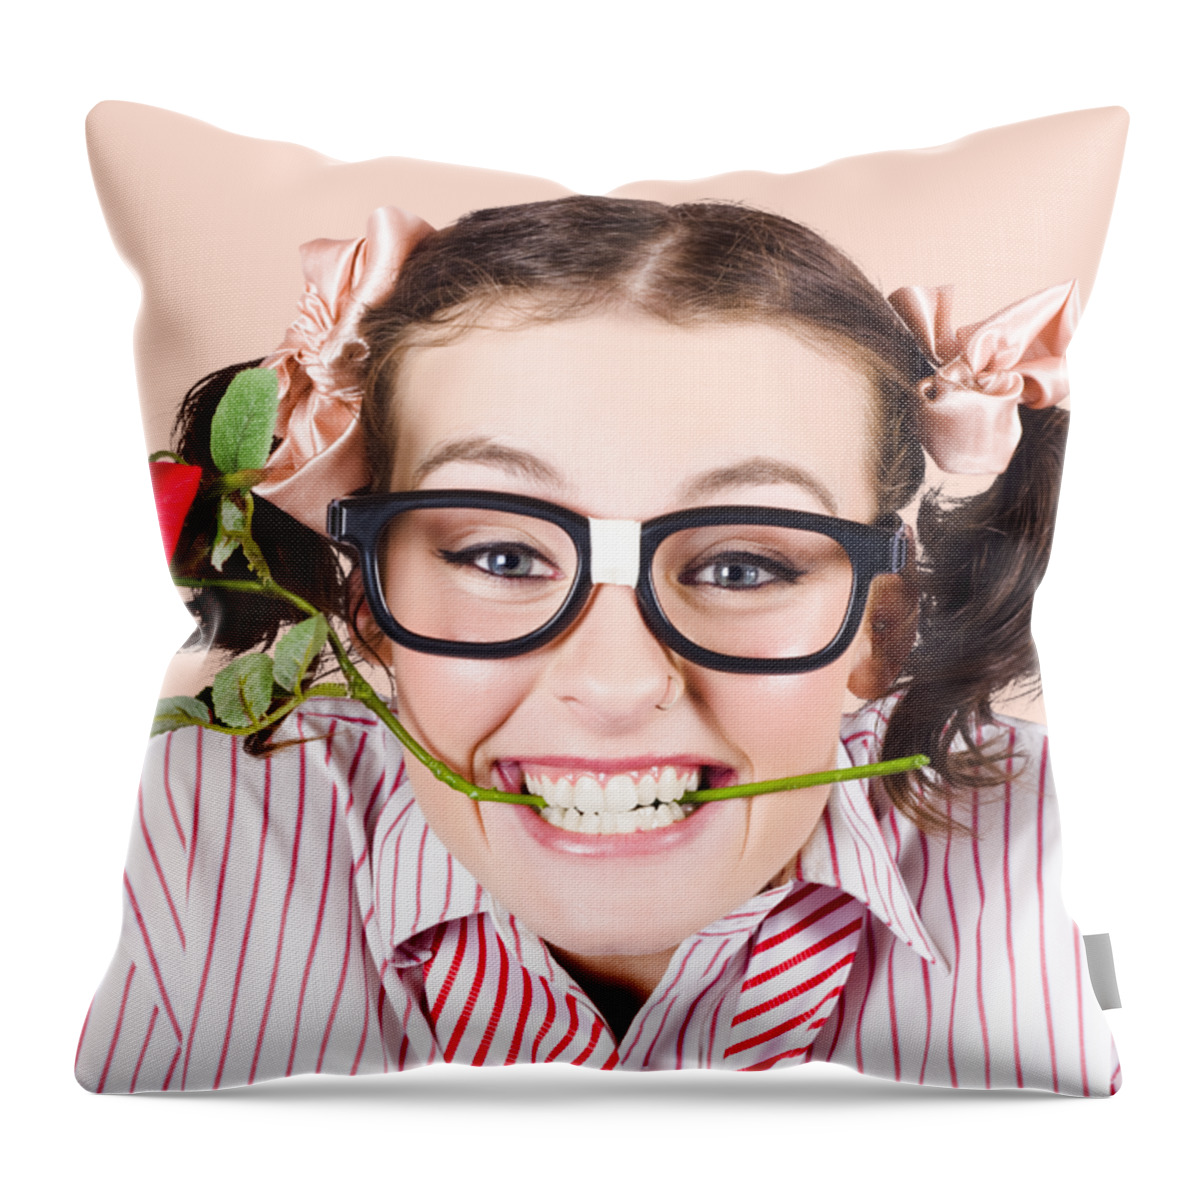 The Cutest Geek Pillow Ever